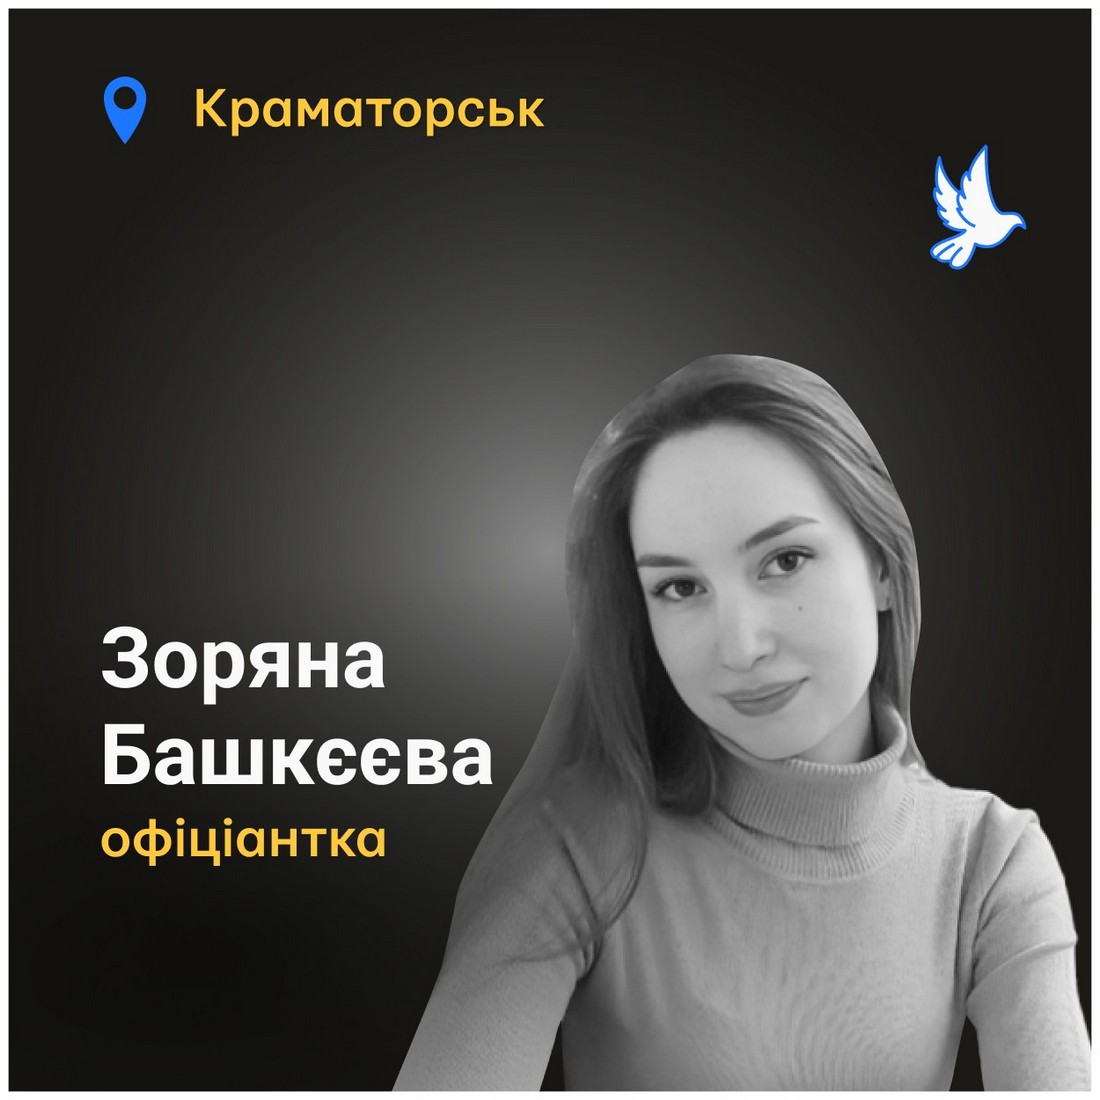 Меморіал: вбиті росією. Зоряна Башкєєва, 24 роки, Краматорськ, червень